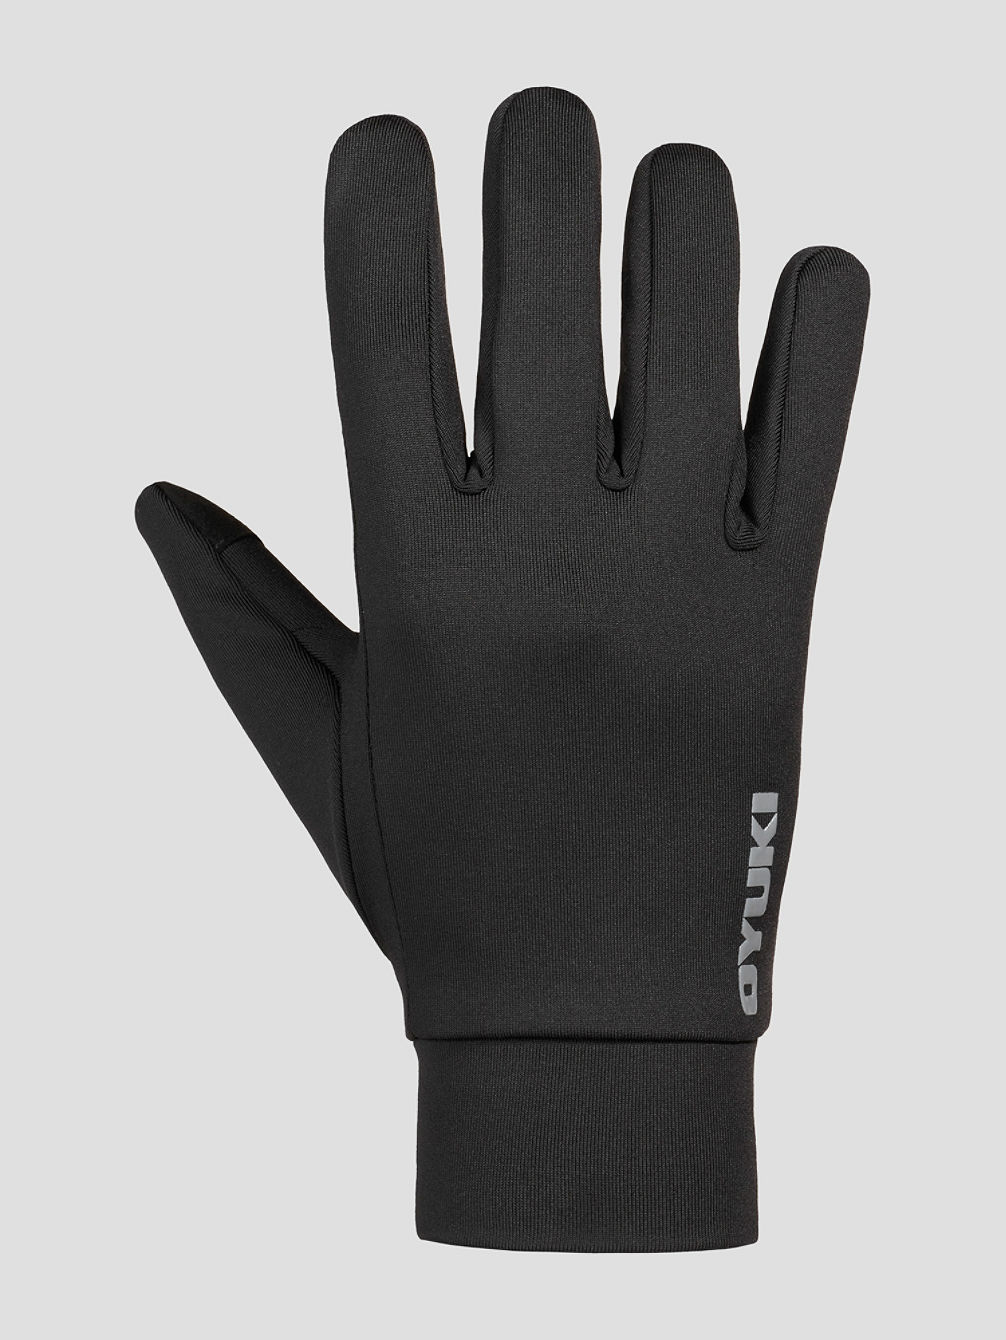 Jr Proliner Gloves